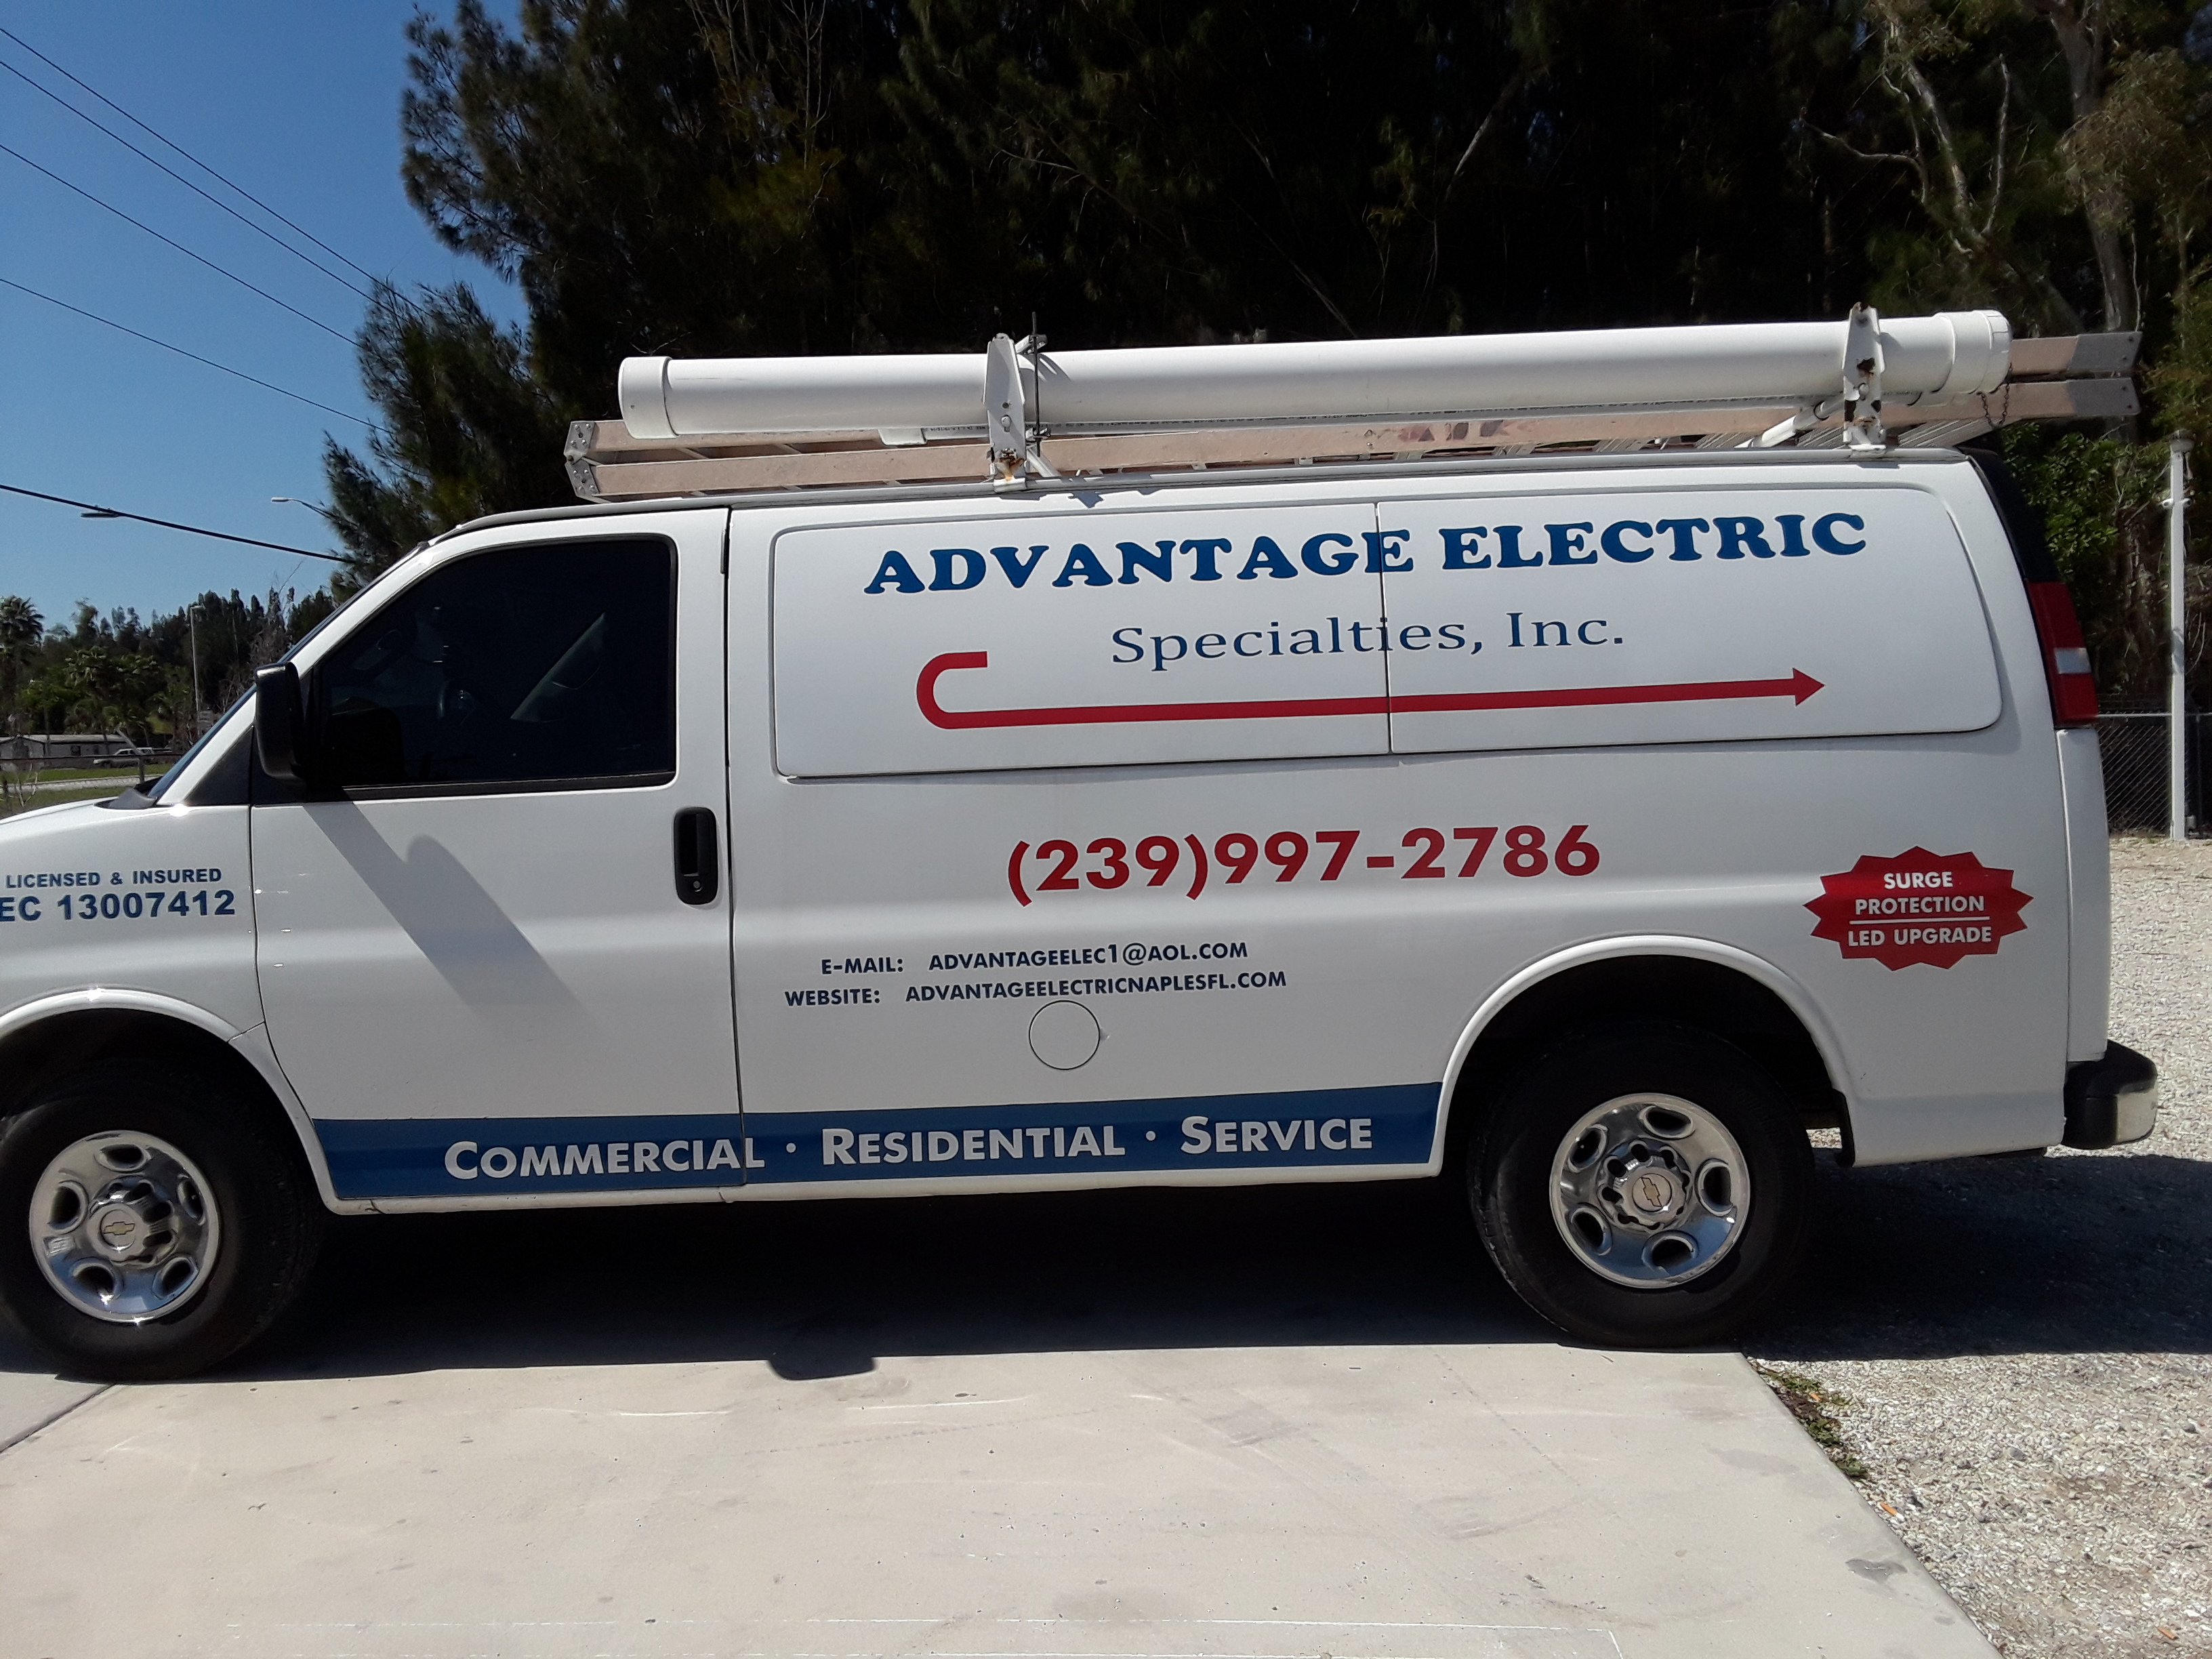 Advantage Electric Specialties, Inc. Logo